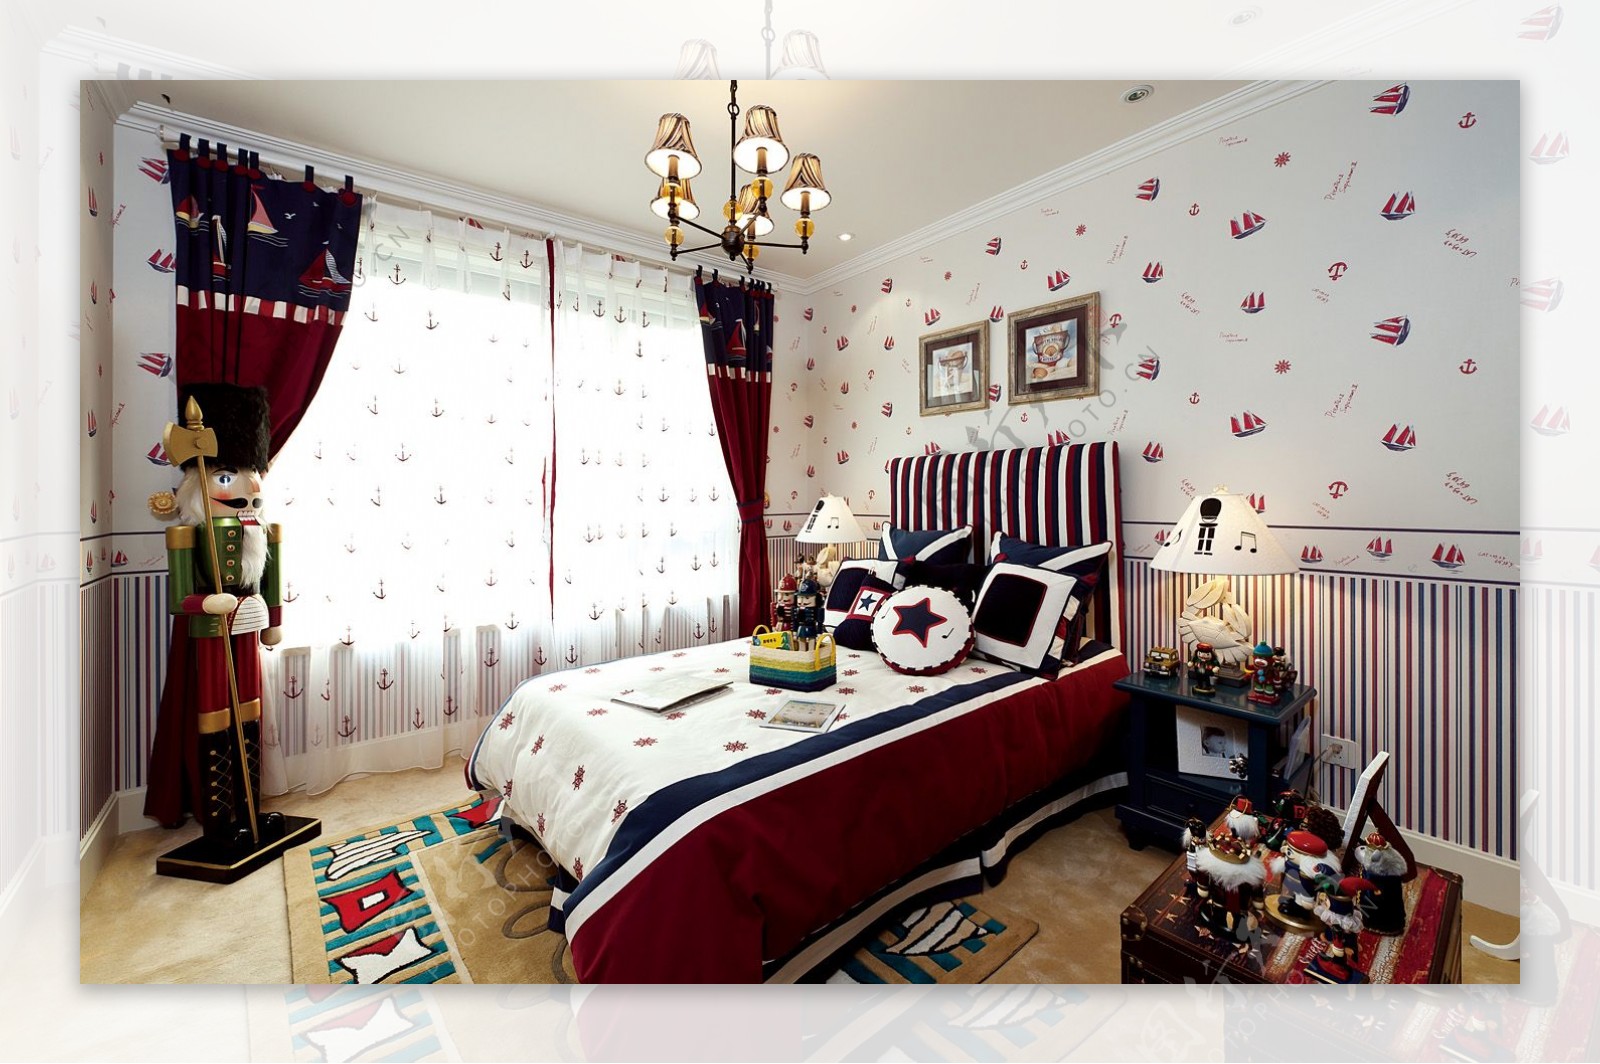 田园温馨风格儿童房卧室壁纸图案装饰设计效果图